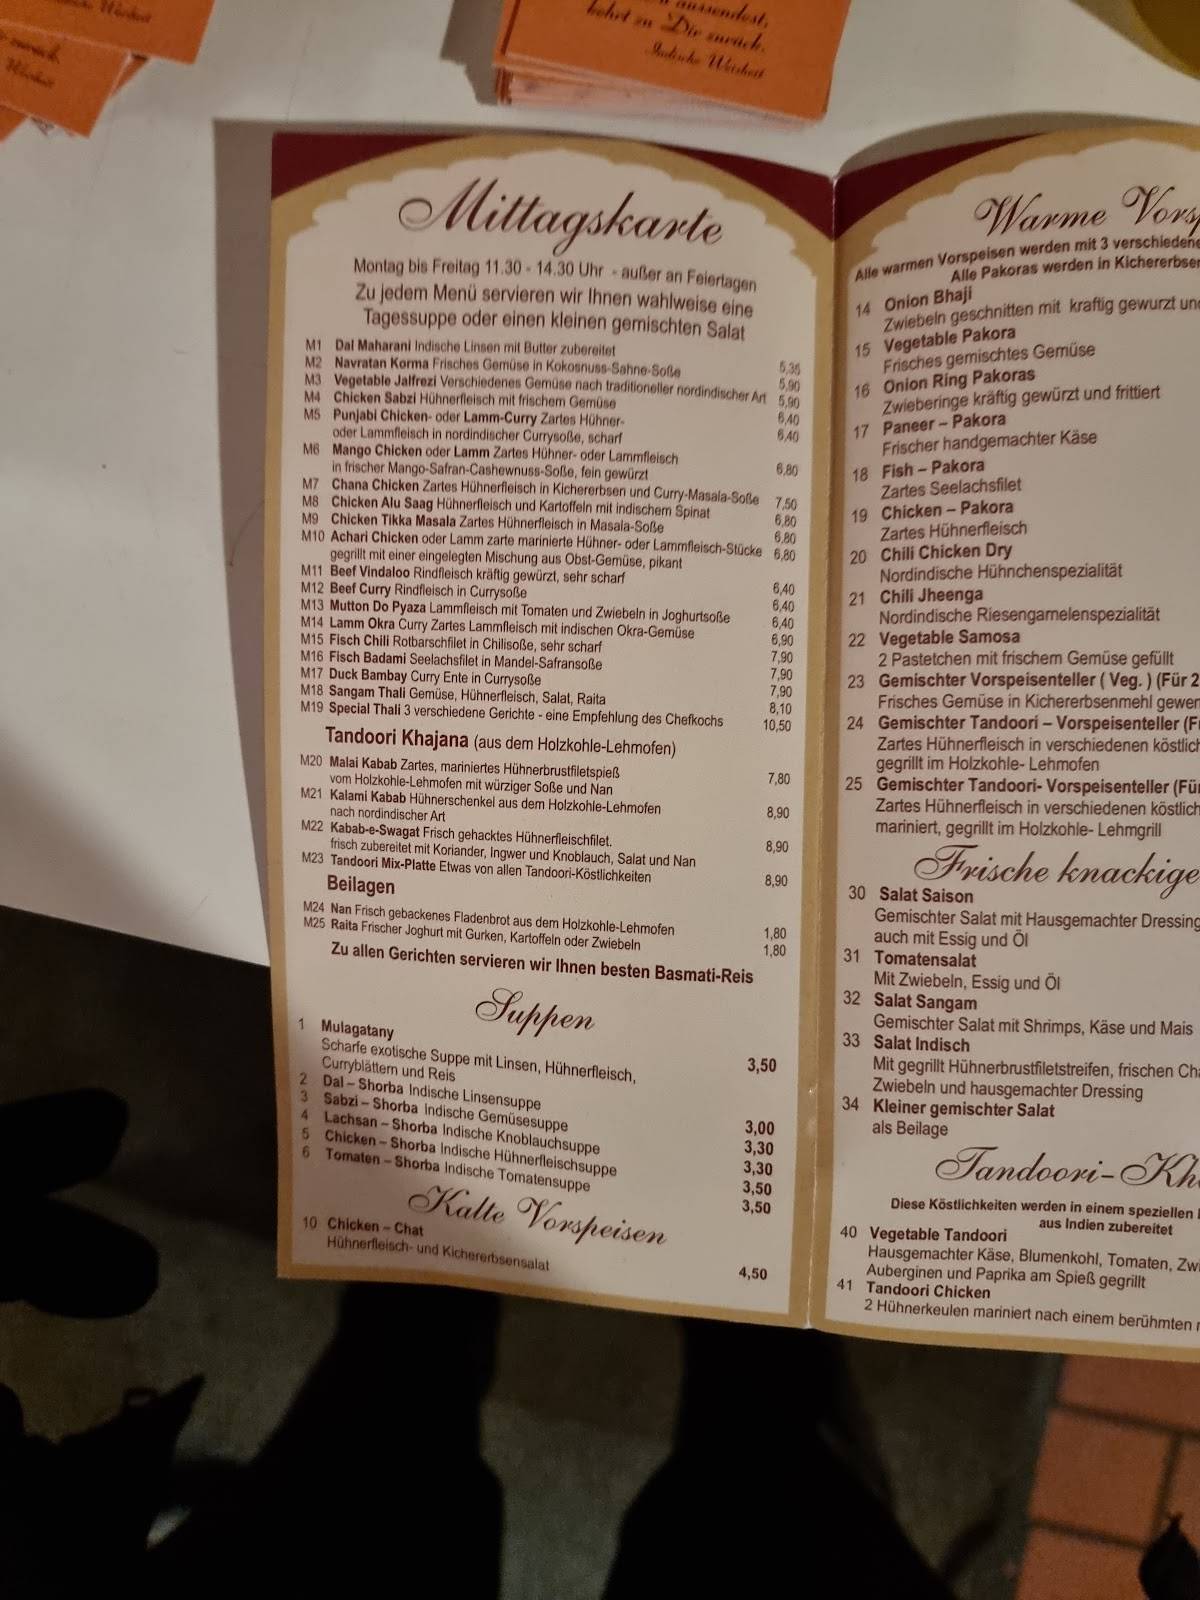 speisekarte-von-sangam-augsburg-restaurant-augsburg